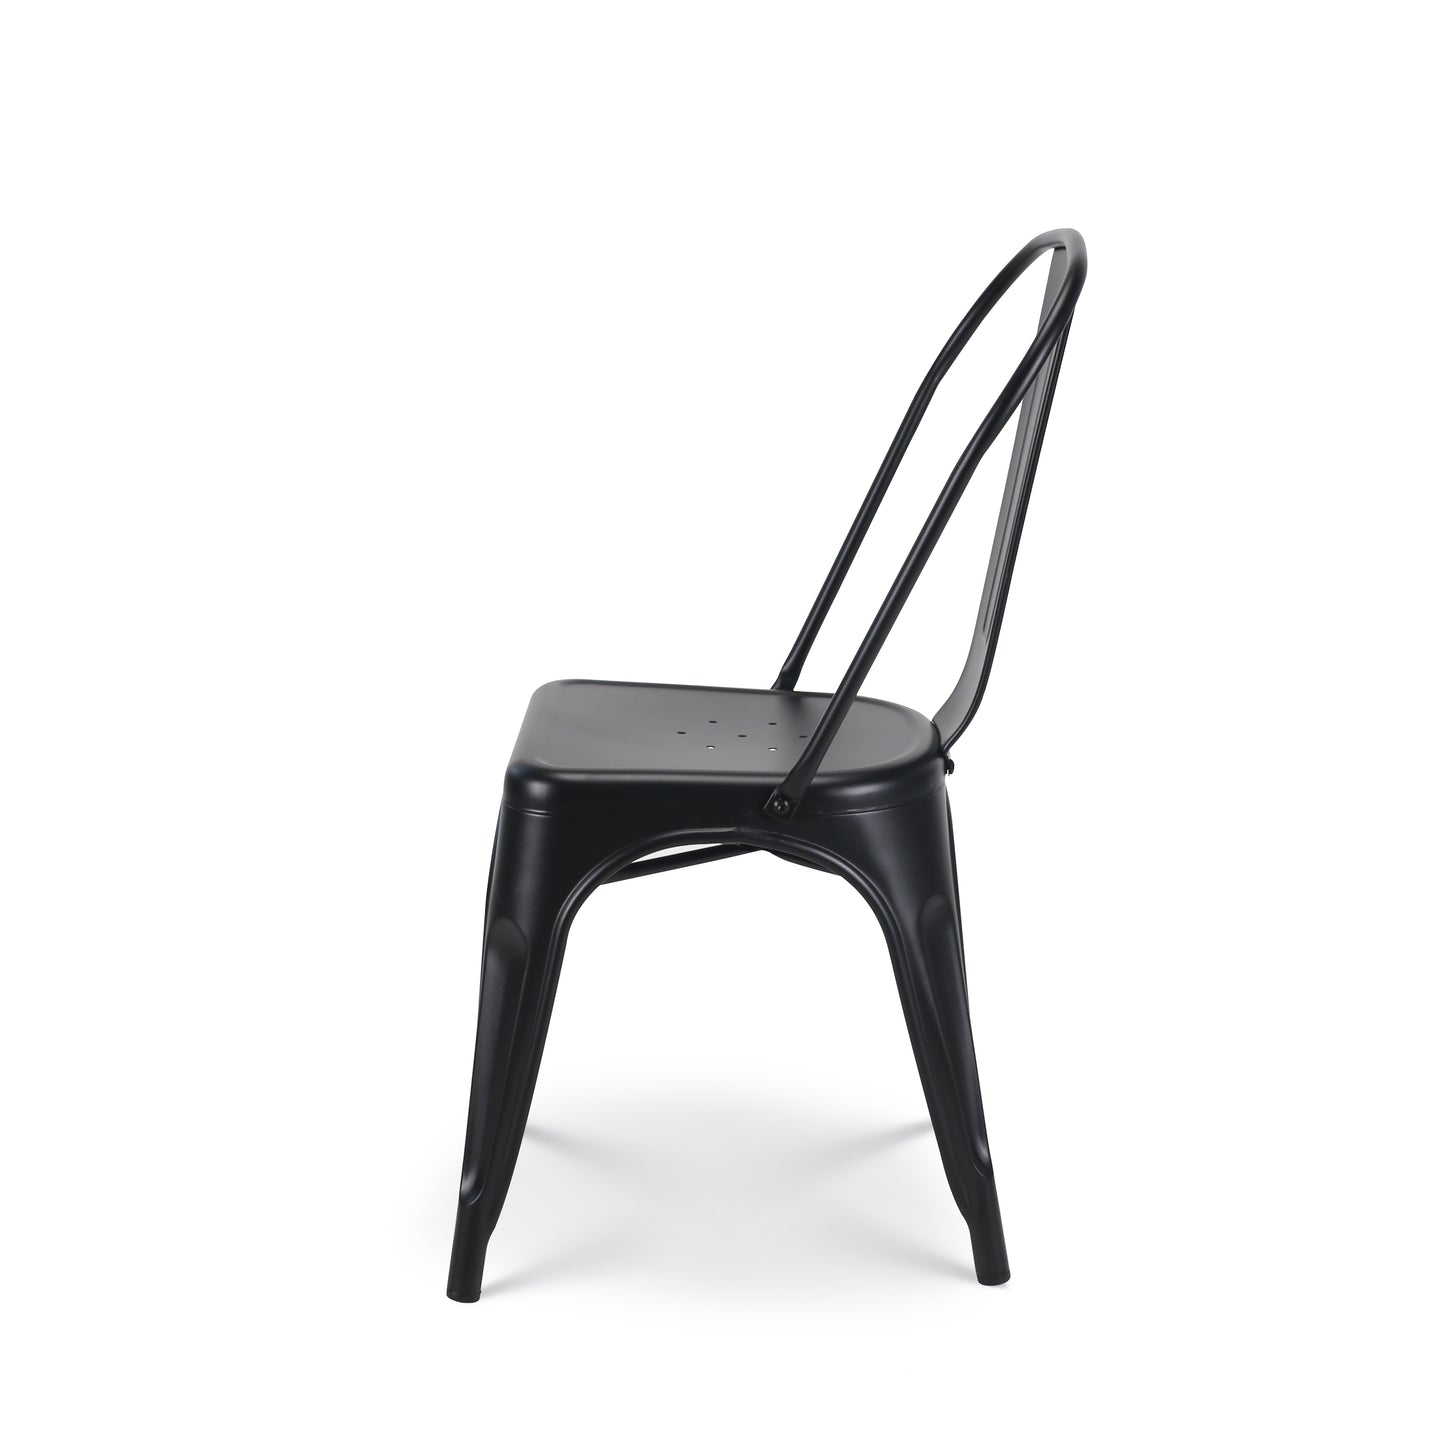 Lot de 4 chaises en métal noir mat - Style industriel